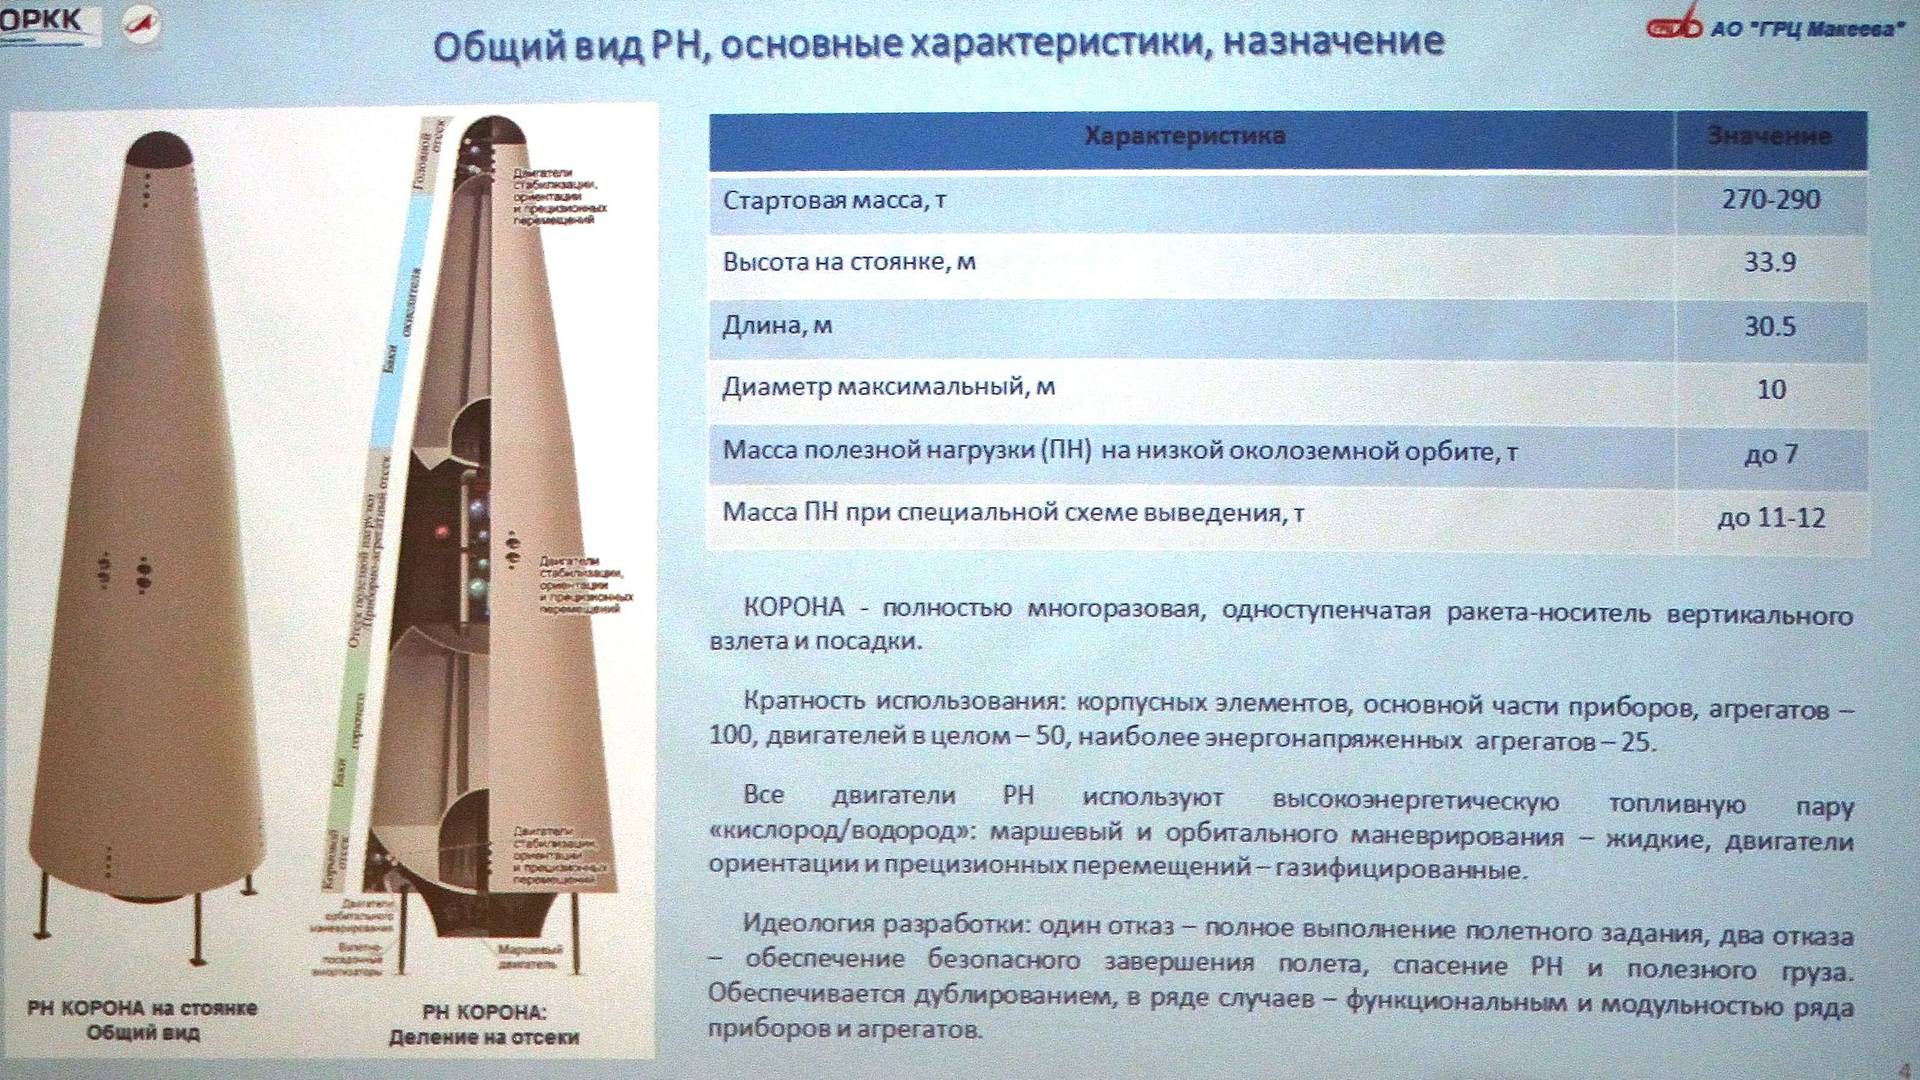 Фотография с презентации на Королёвских чтениях 2018 года